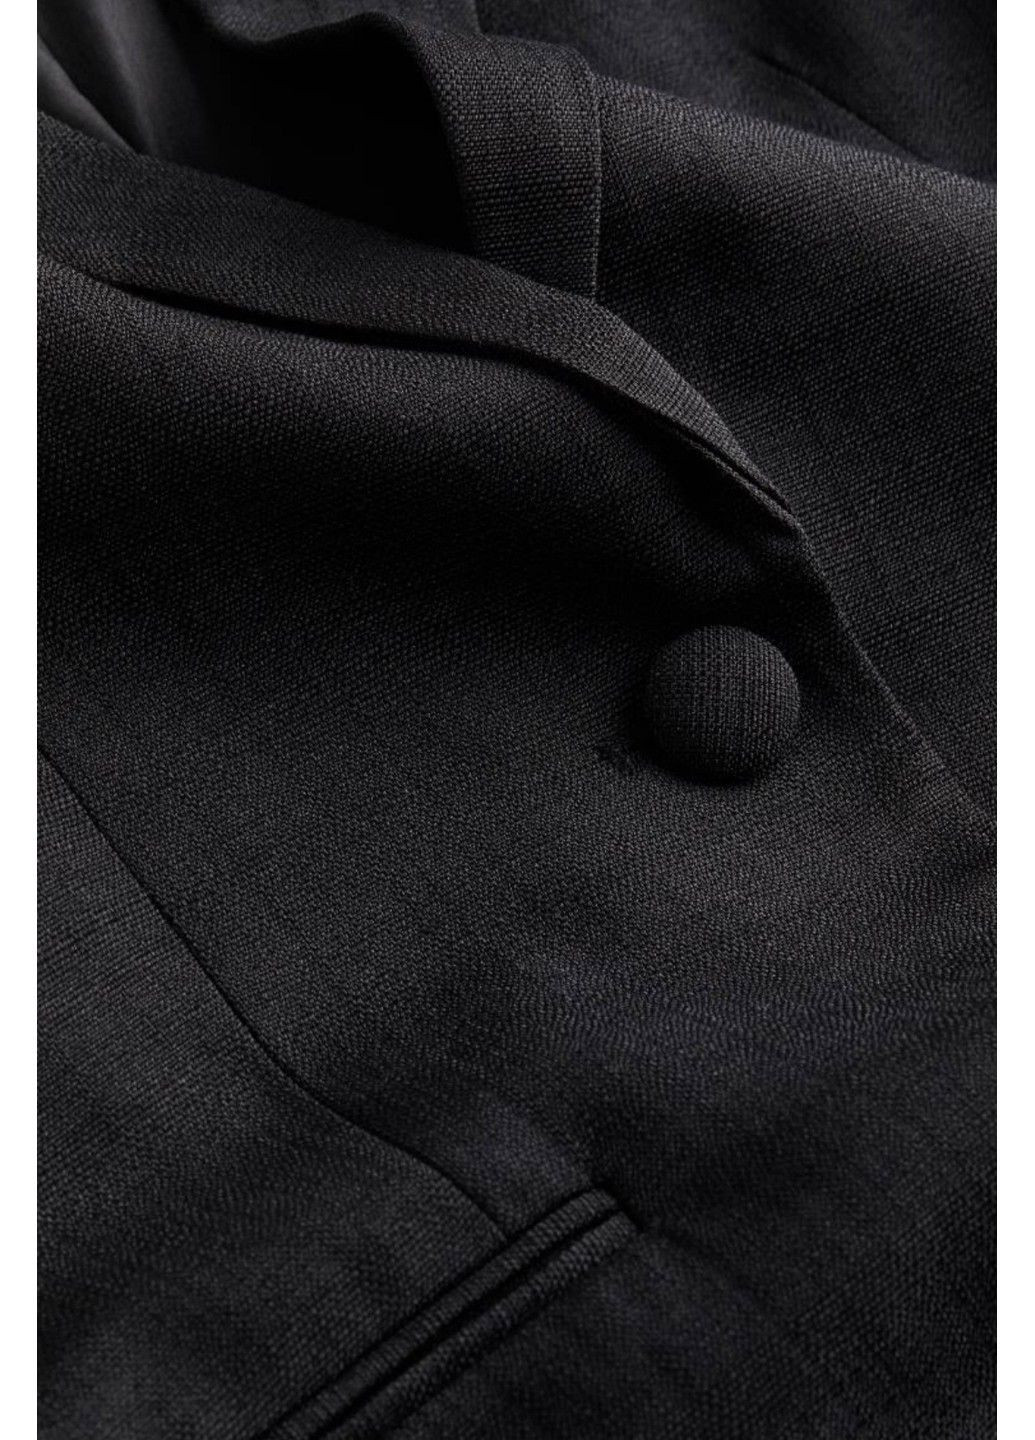 Черный женский женский однобортный пиджак н&м (56587) s черный H&M - демисезонный